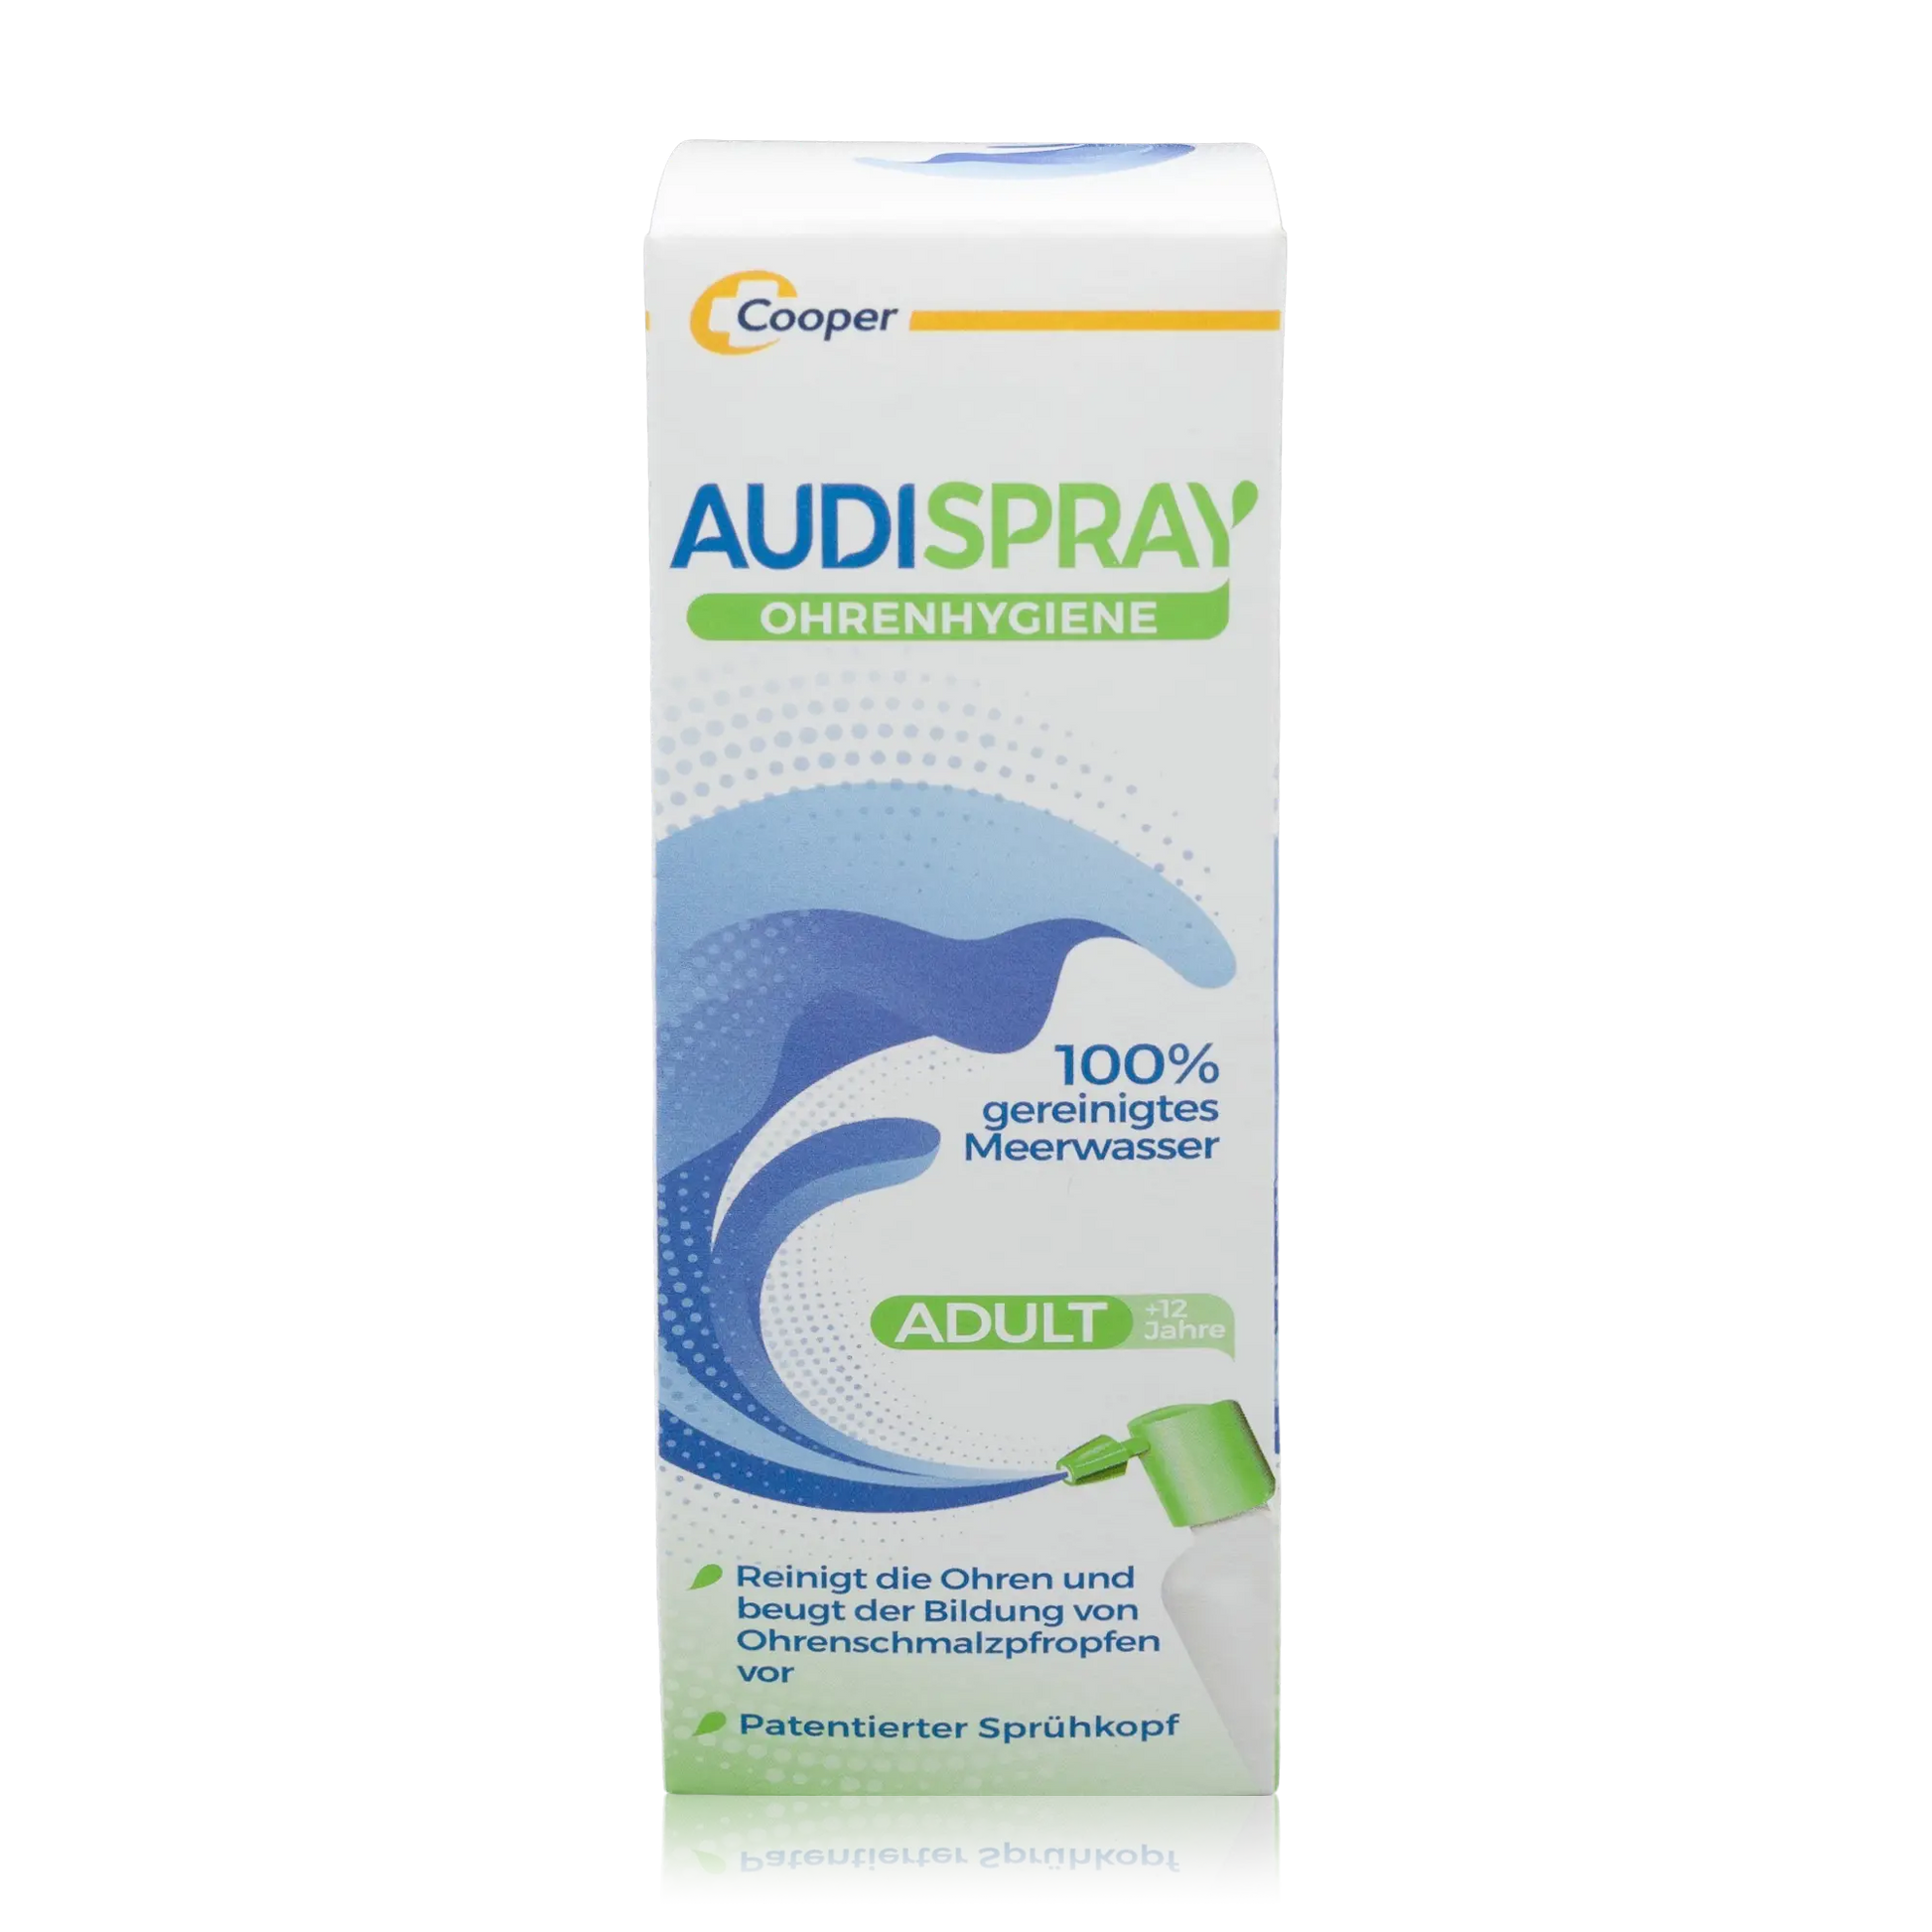 Audispray Adult Ohrenhygiene mit 100% gereinigtem Meerwasser (50ml) - ROTE.PLACE